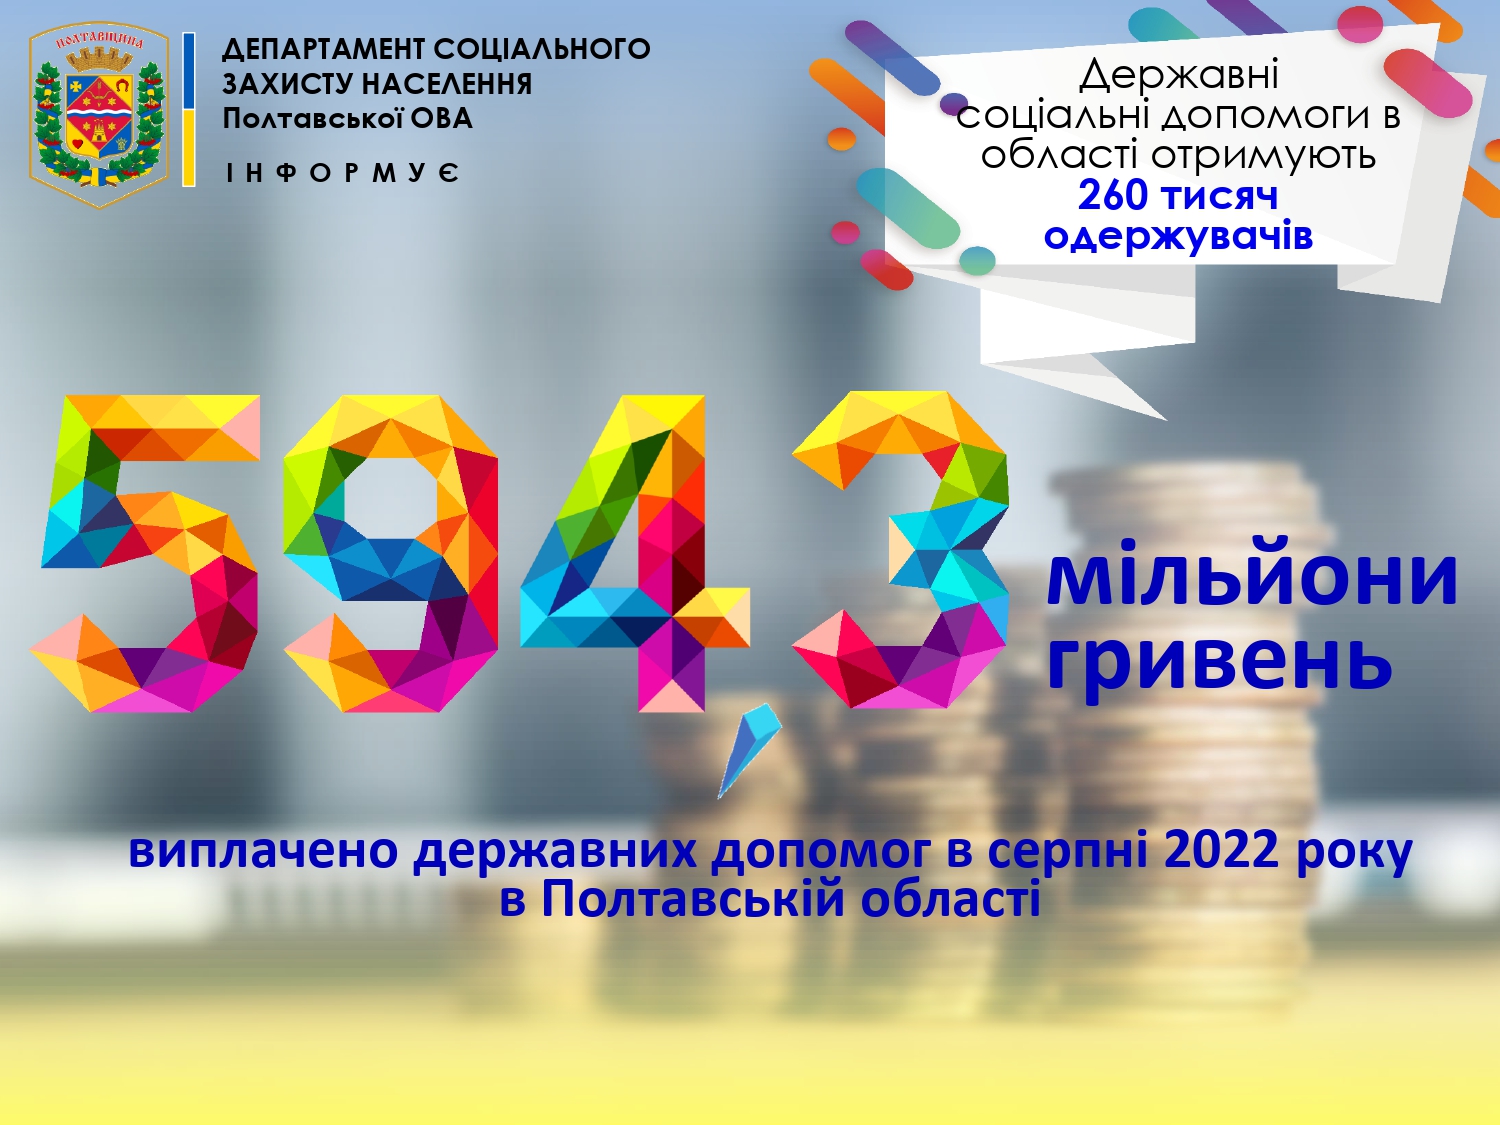 593,4 млн грн державних допомог виплачено у серпні 2022 року в Полтавській області